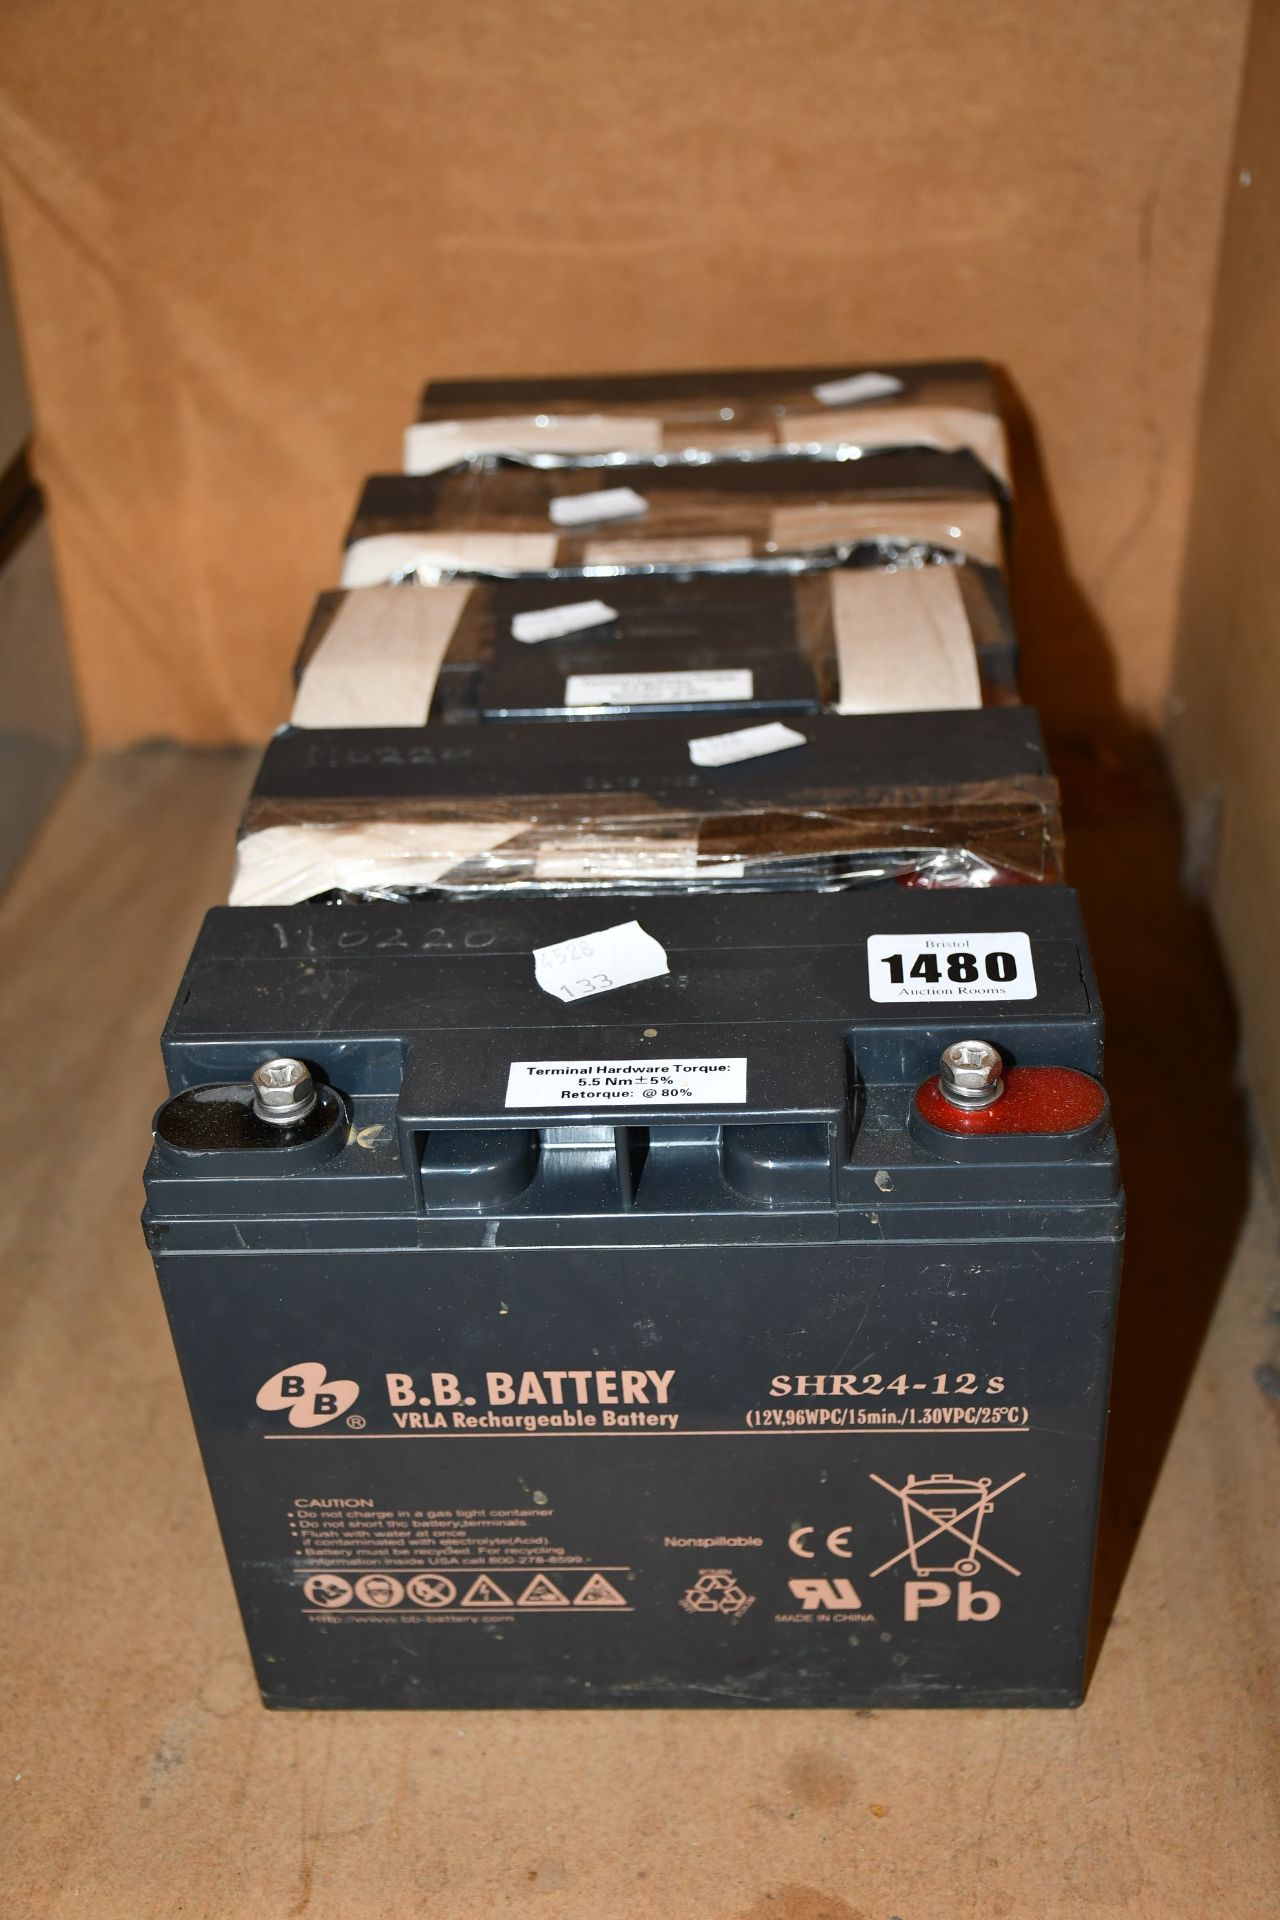 Five SHR24-12s VRLA rechargeable batteries.